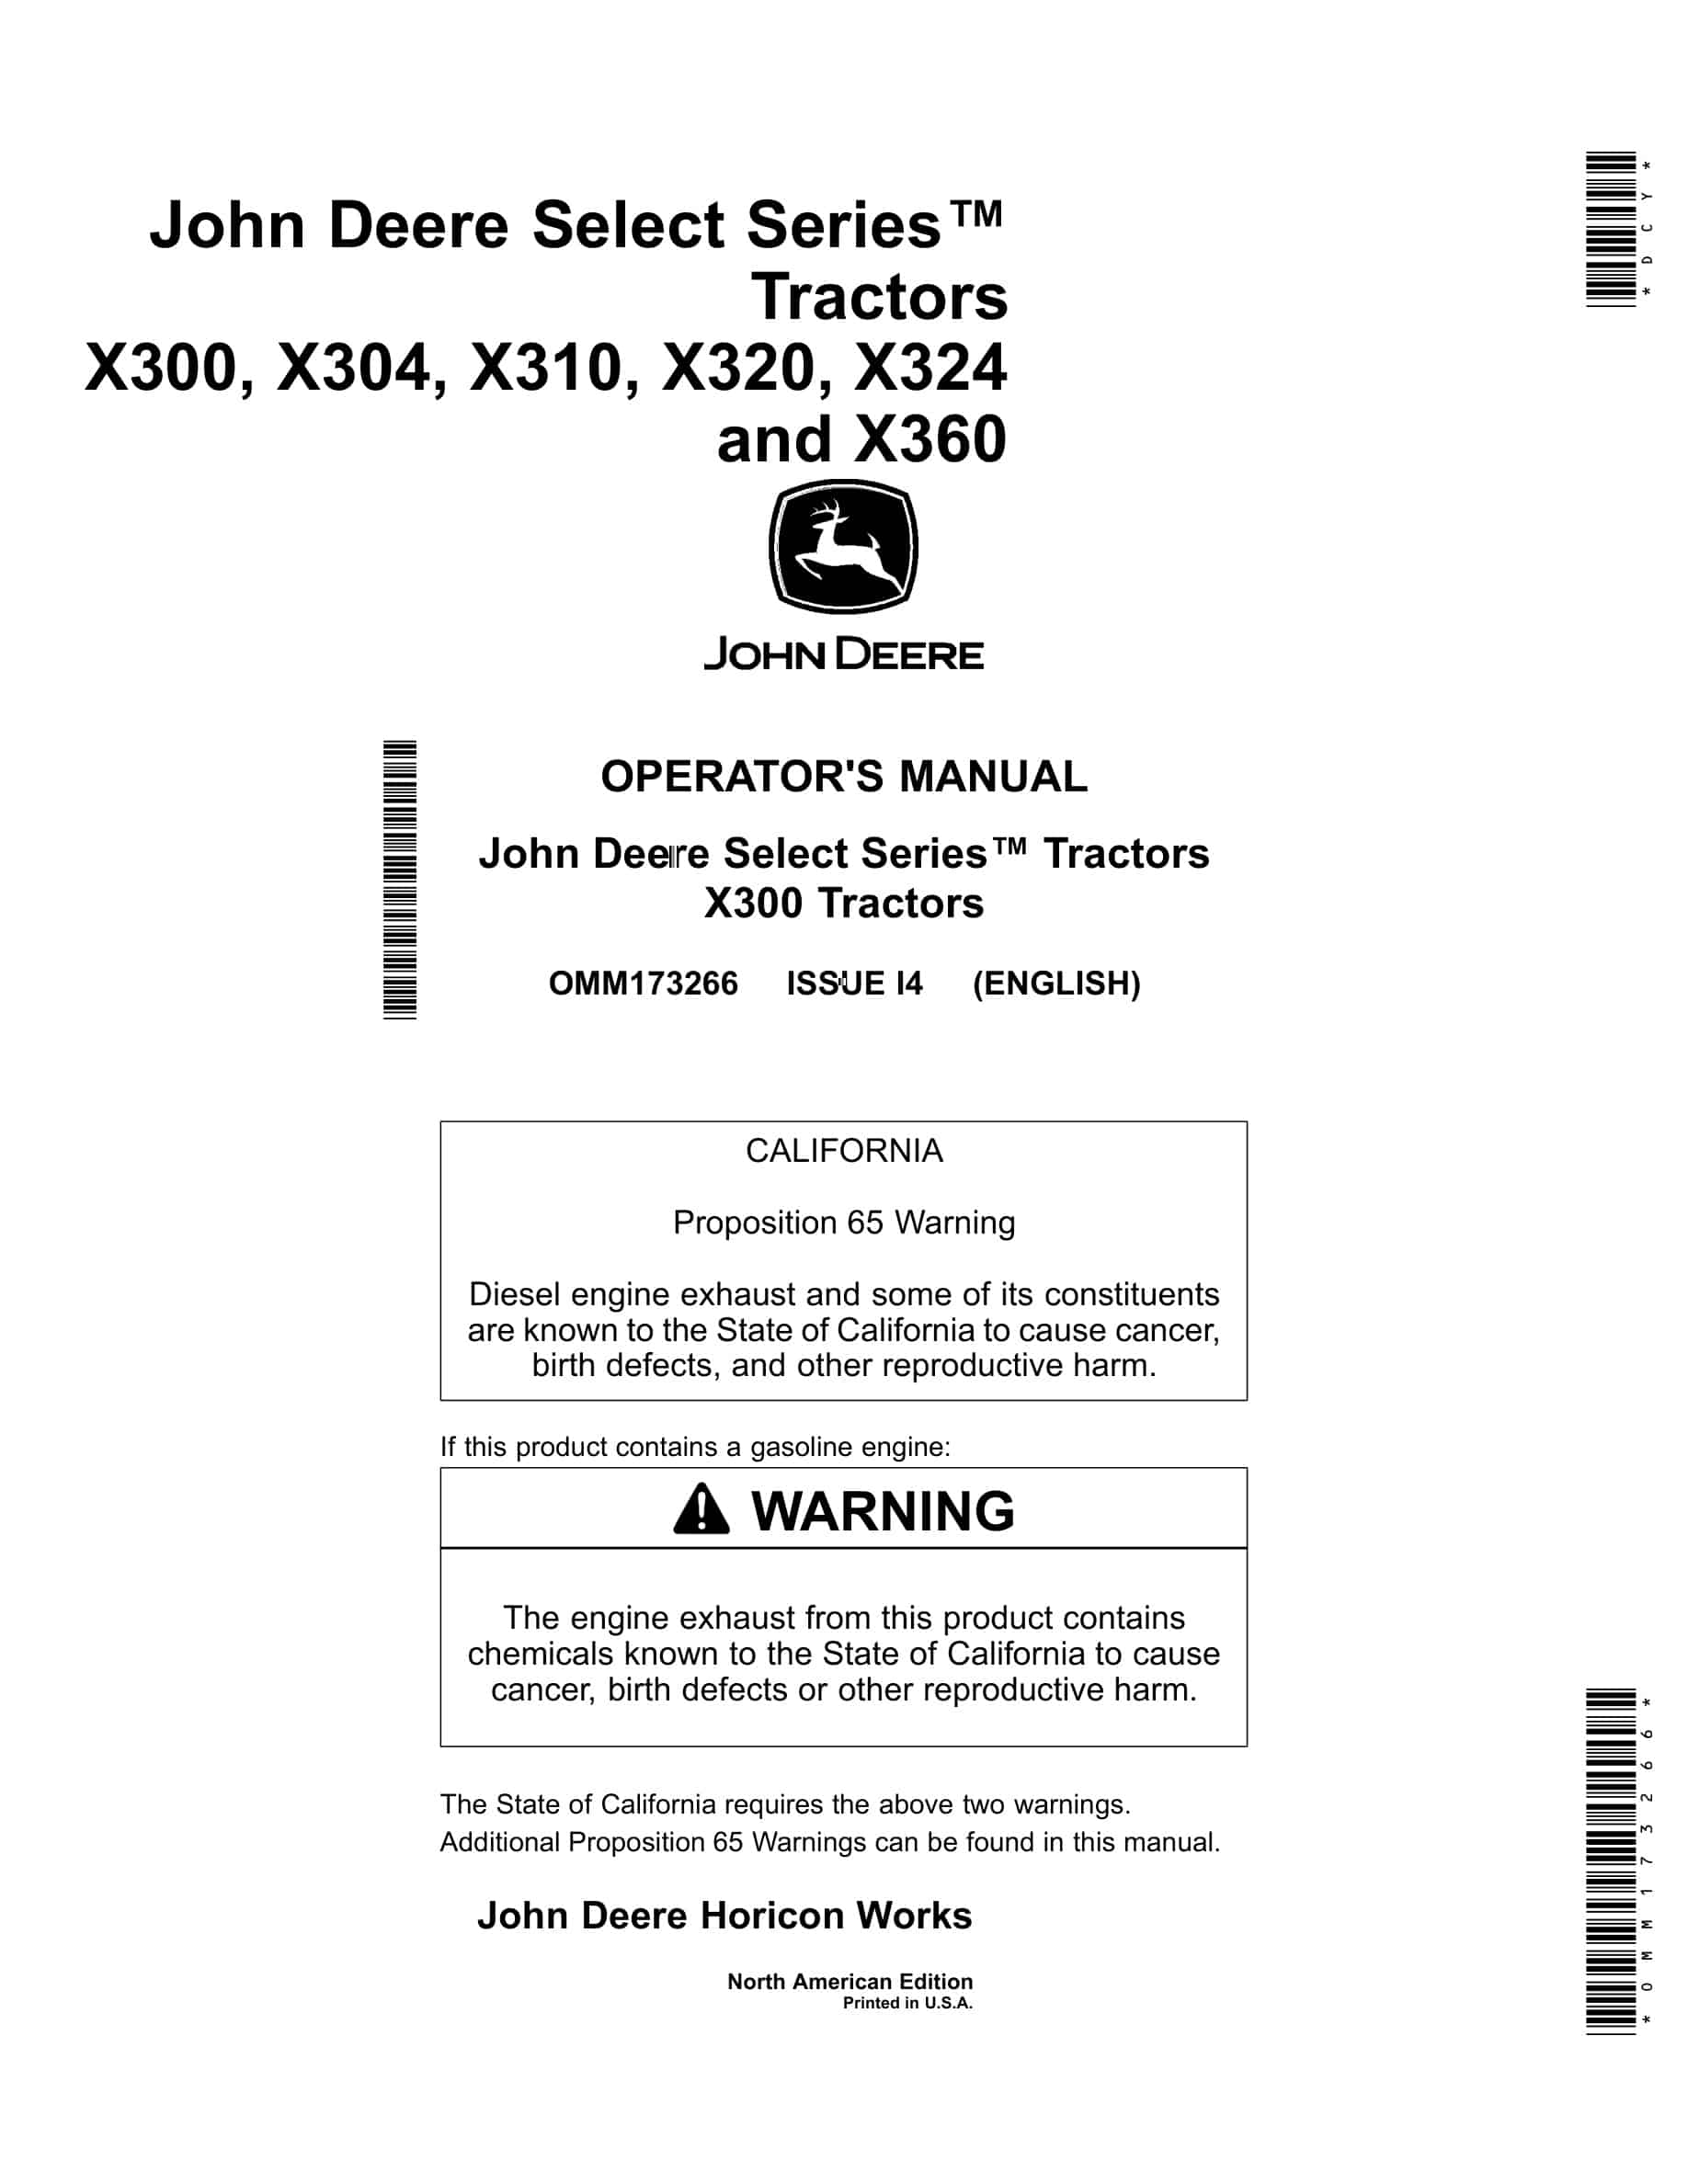 John Deere X300, X304, X310, X320, X324 and X360 Tractor Operator Manual OMM173266-1